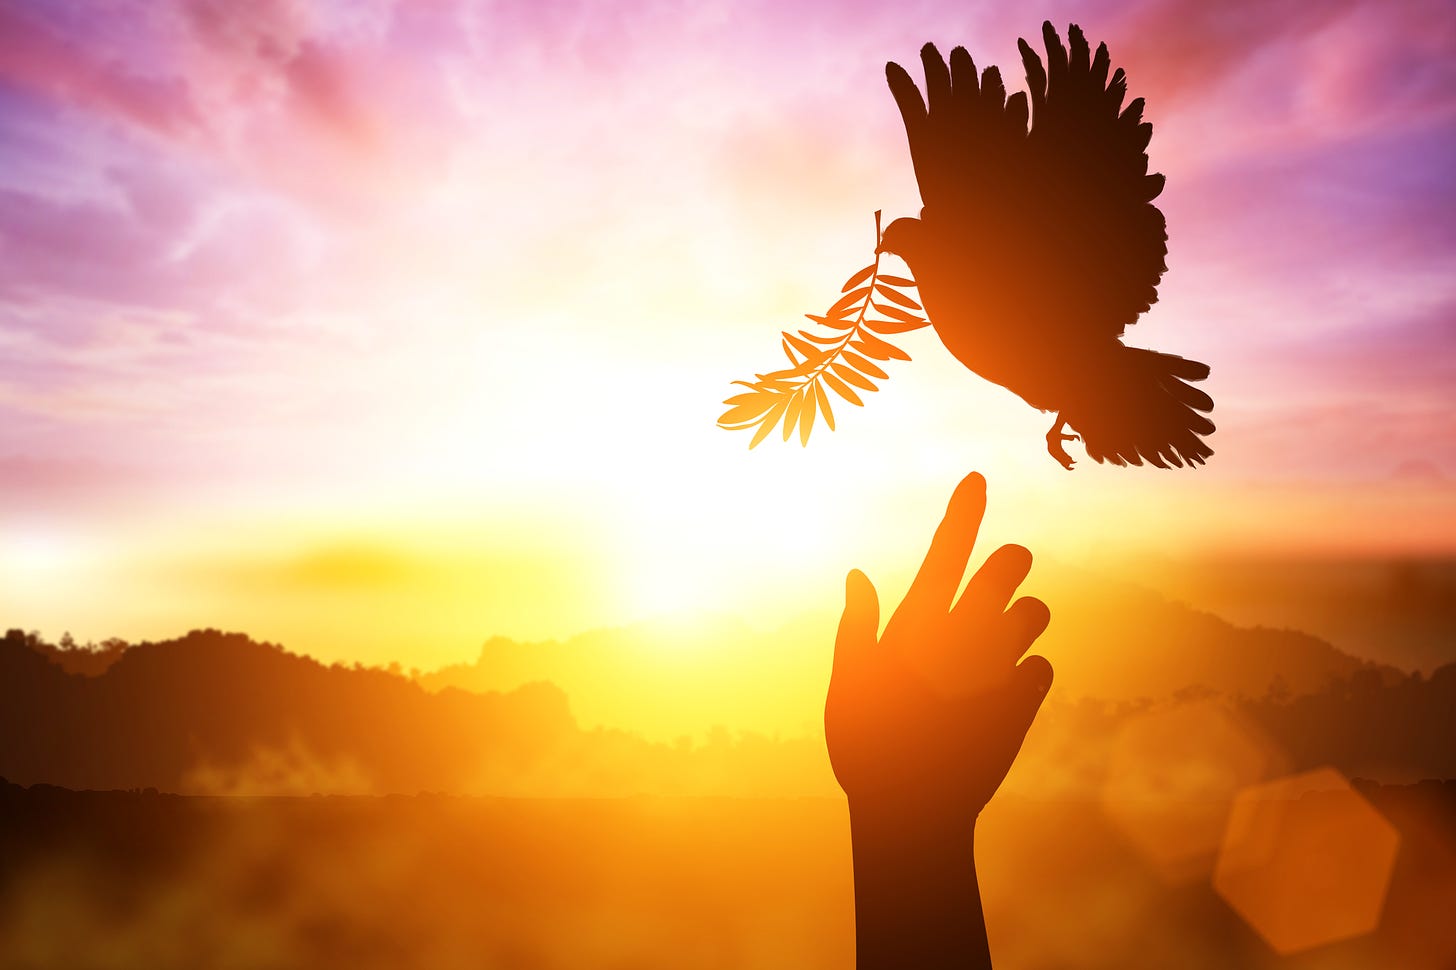 Hand reaching dove of Holy Spirit